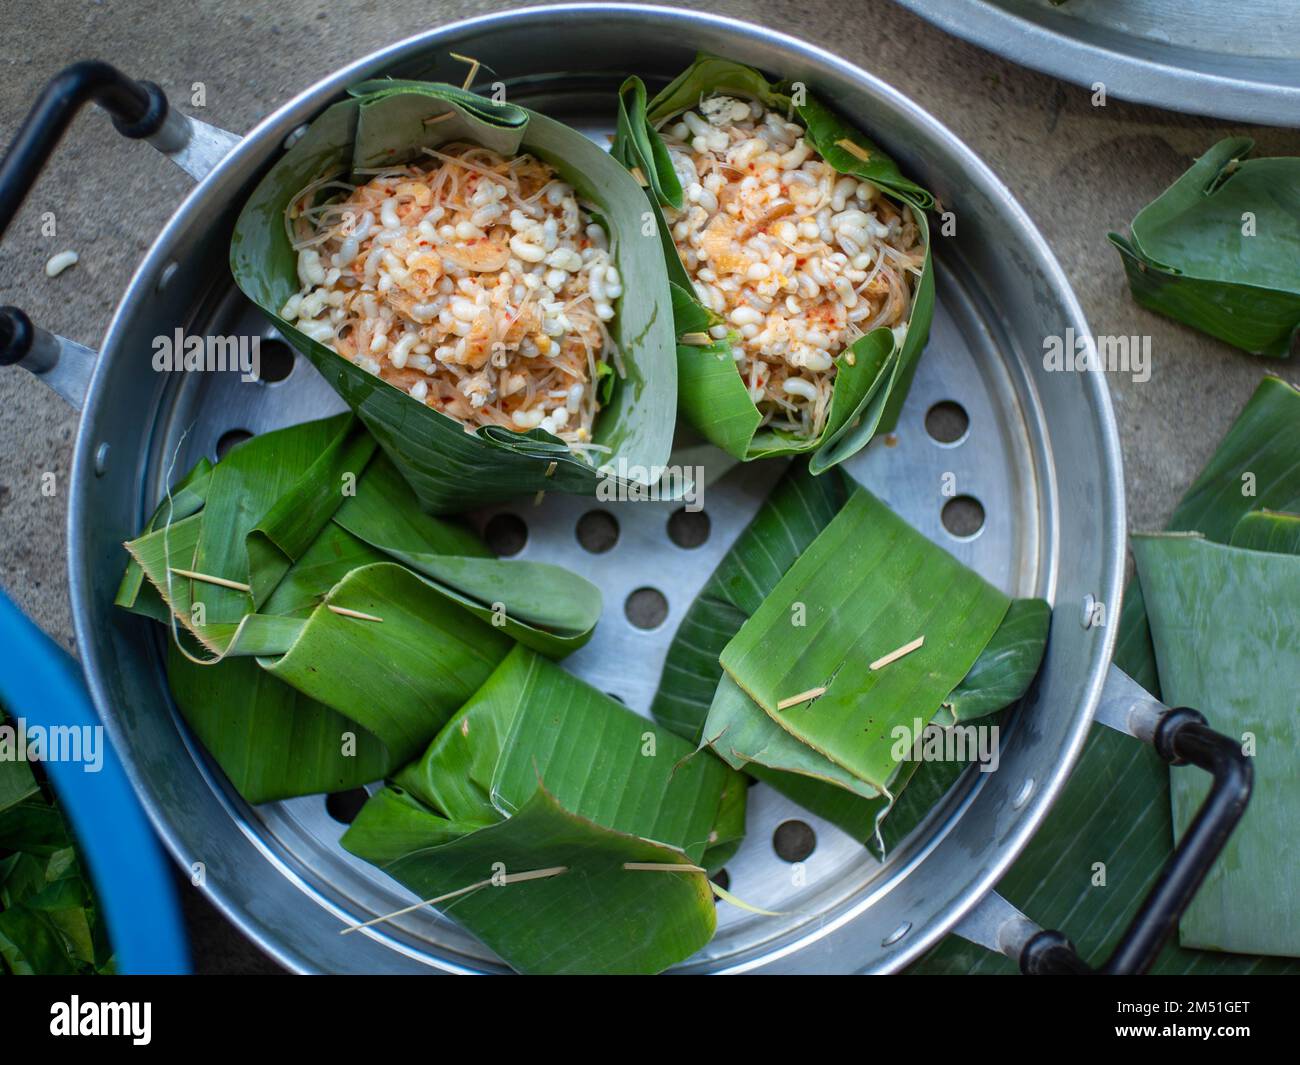 La cuisine thaïlandaise appelée « Hor Mhok » avec des ingrédients de vermicelles et des œufs fourmis.Mettre dans un contenant de feuilles de banane Banque D'Images